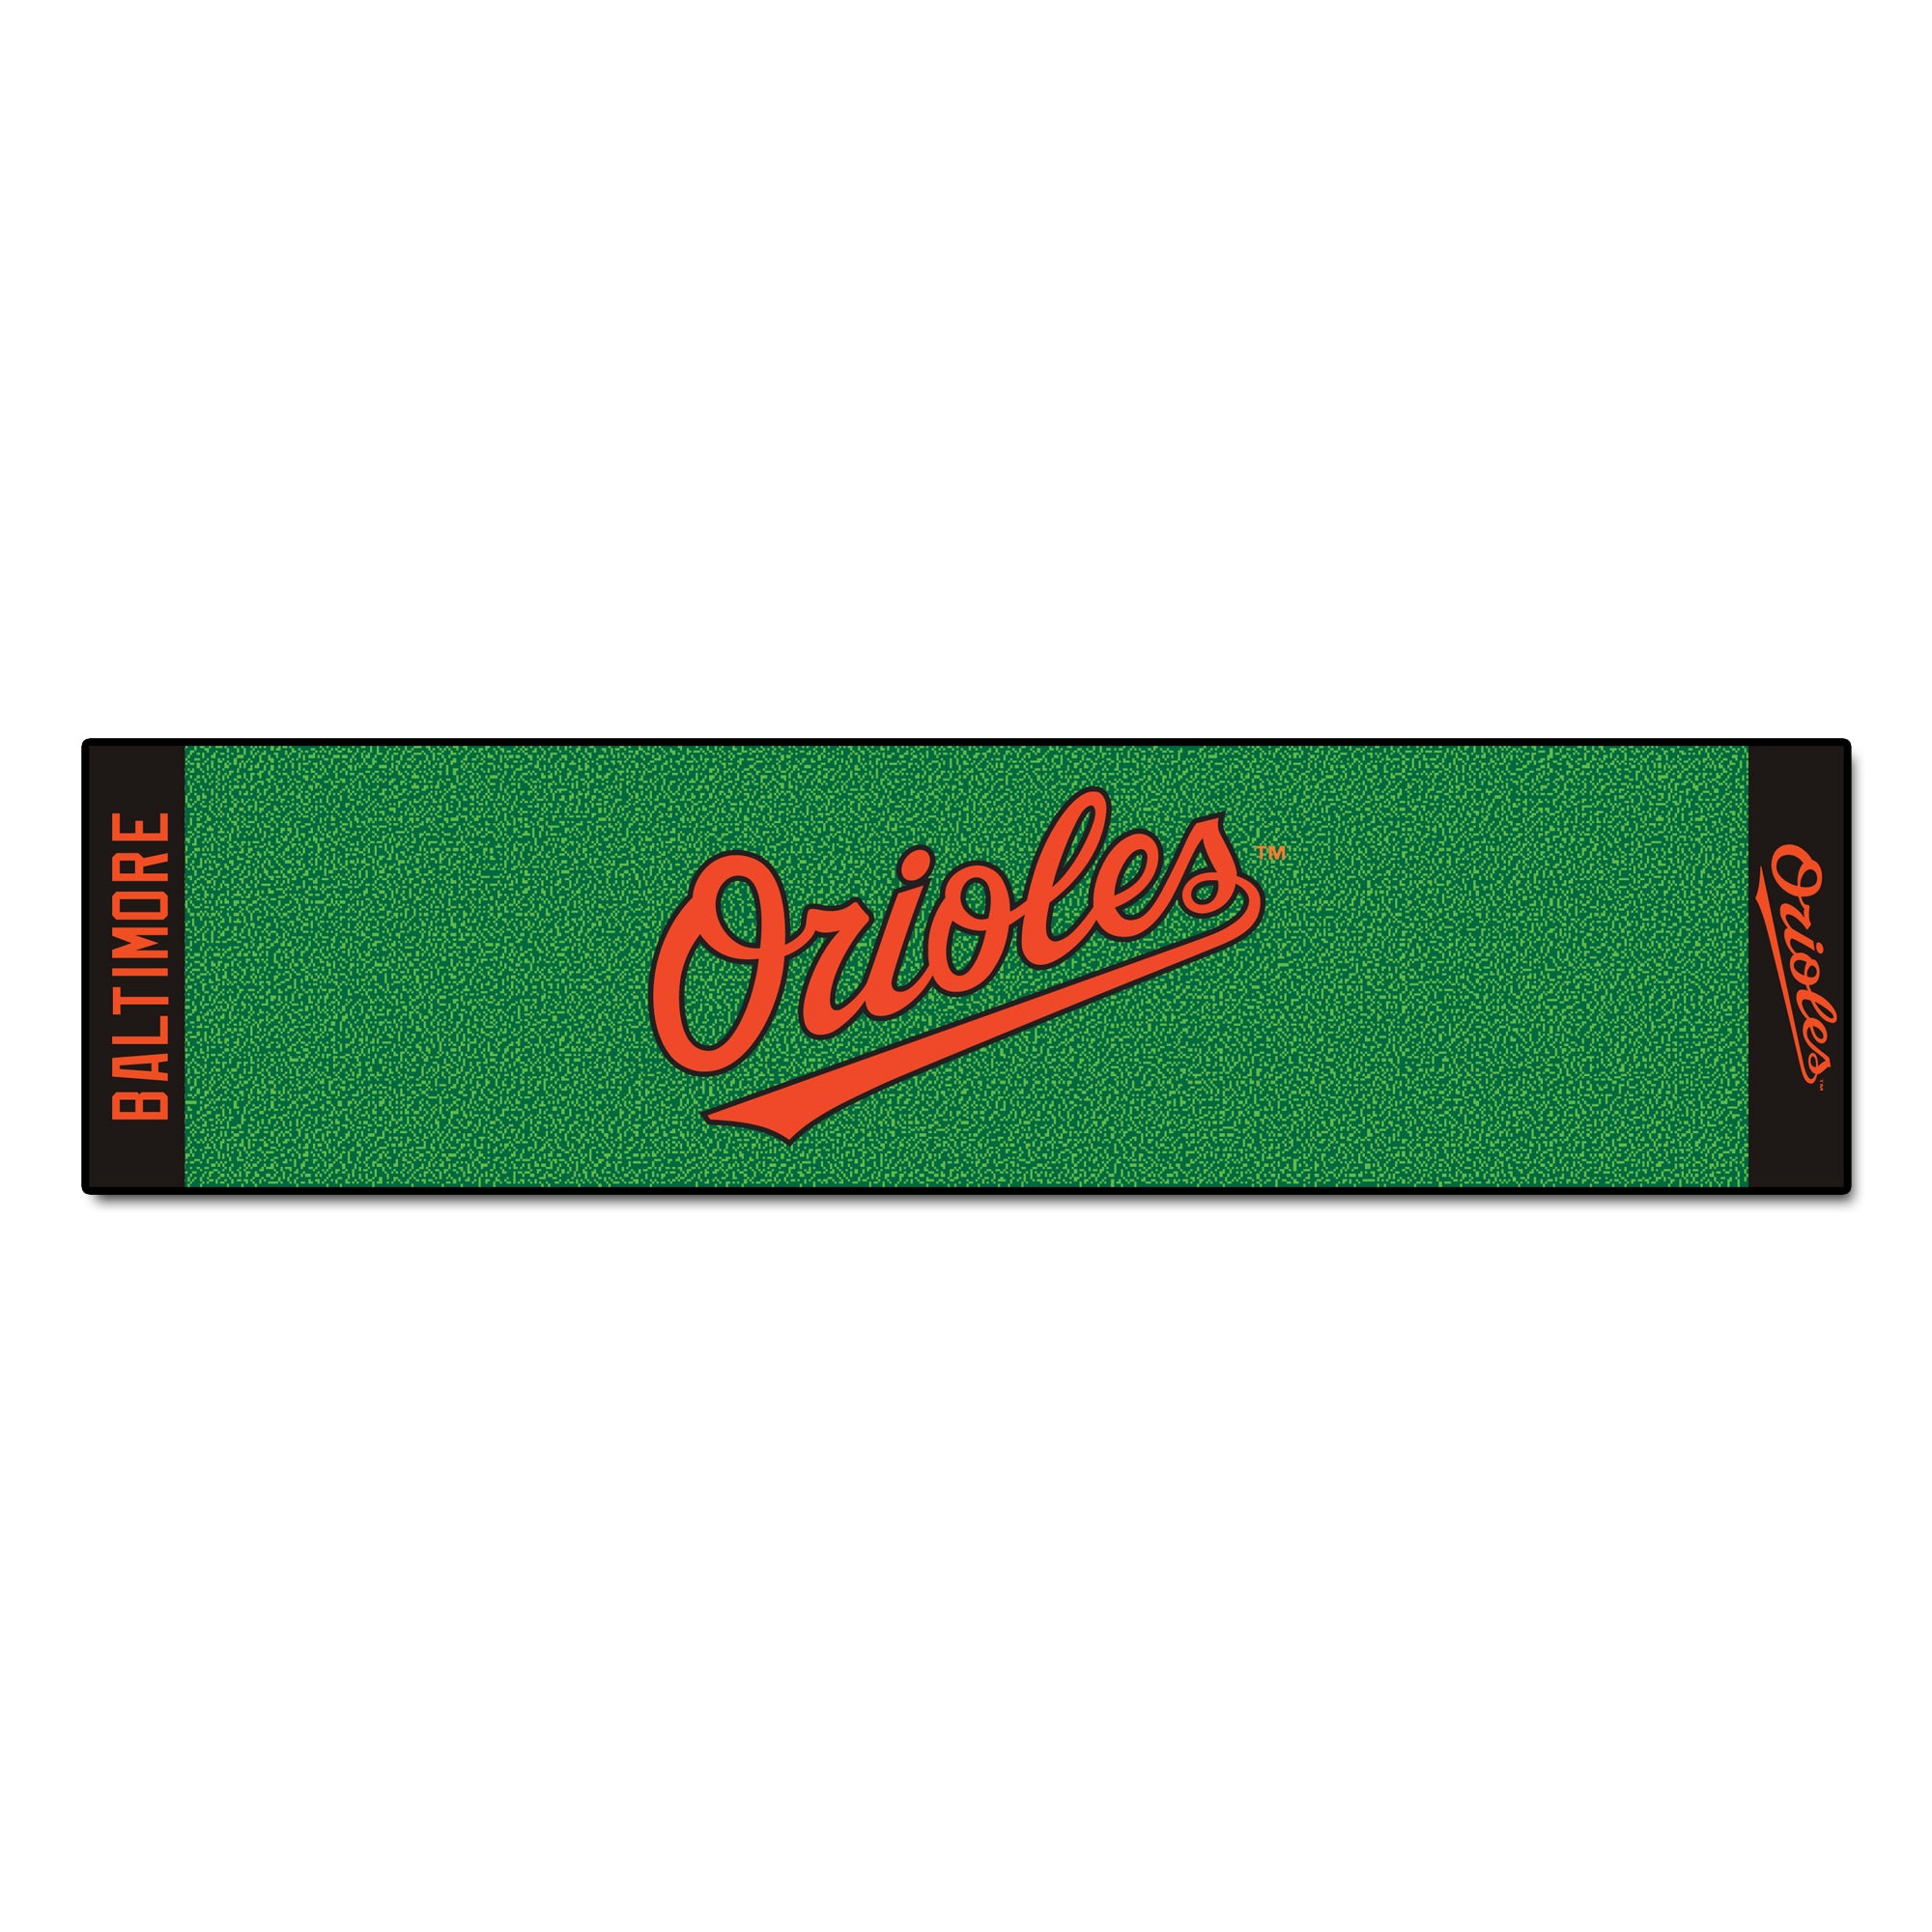 FANMATS, MLB - Baltimore Orioles Script Putting Green Mat - 1.5ft. x 6ft.